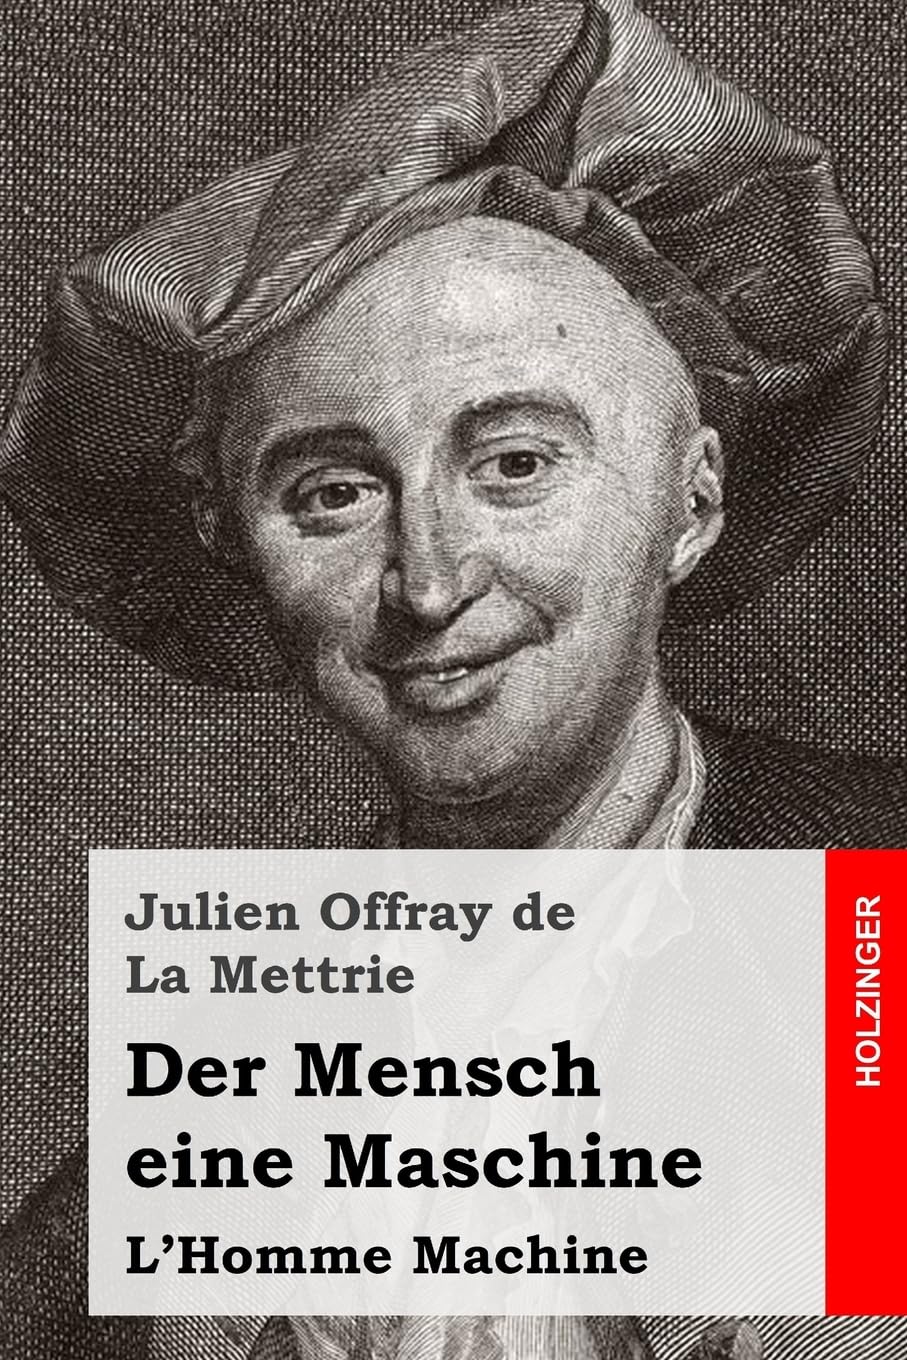 de La Mettrie, Julien Offray:  Der Mensch eine Maschine. 